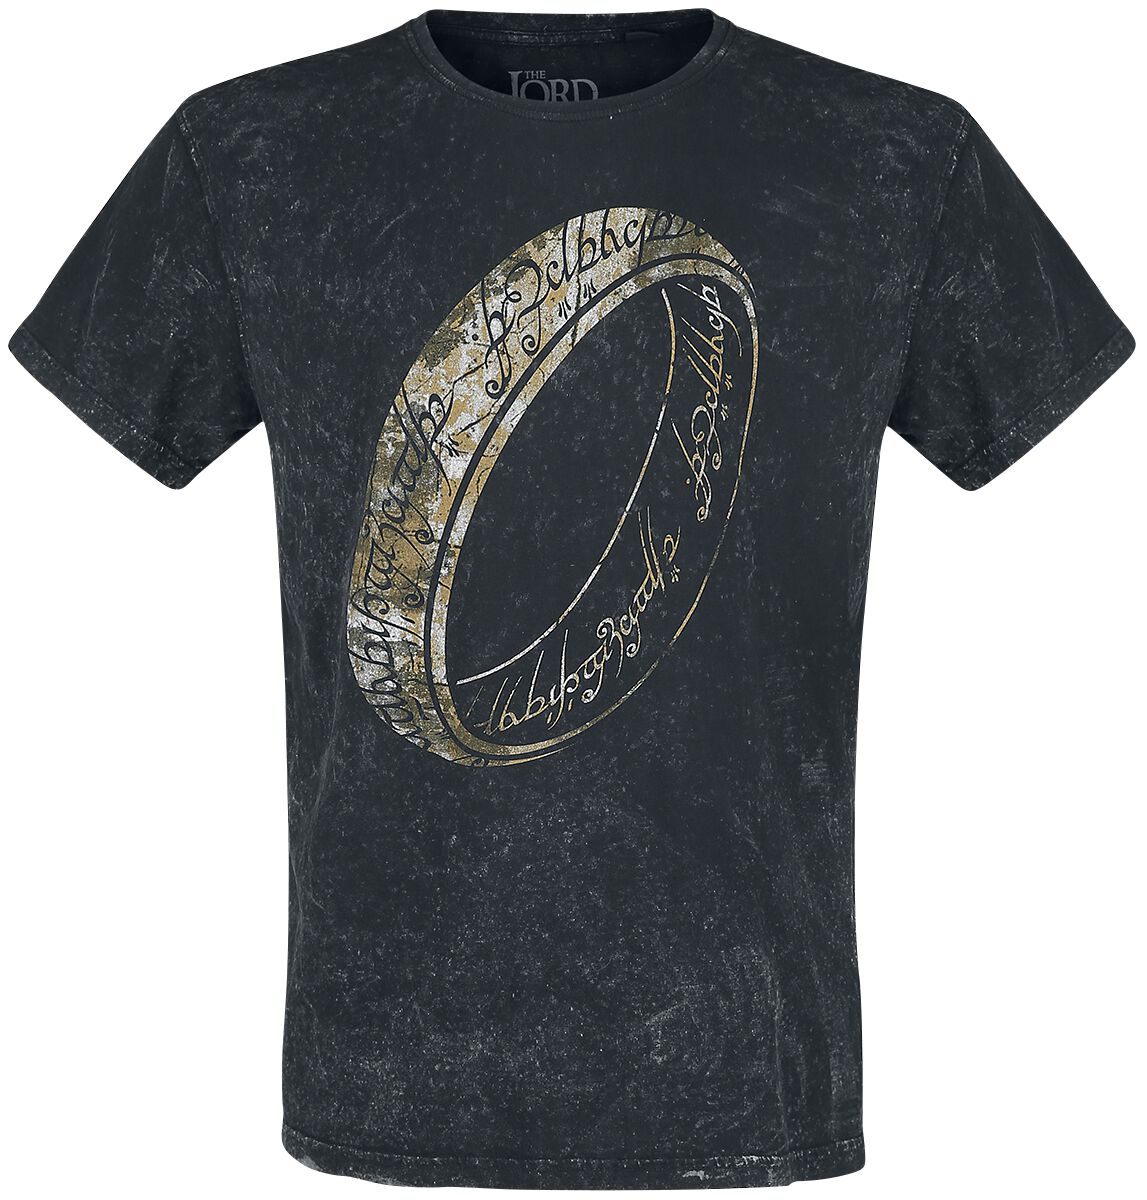 Der Herr der Ringe T-Shirt - One Ring To Rule Them All - M bis XXL - für Männer - Größe XL - schwarz  - EMP exklusives Merchandise!